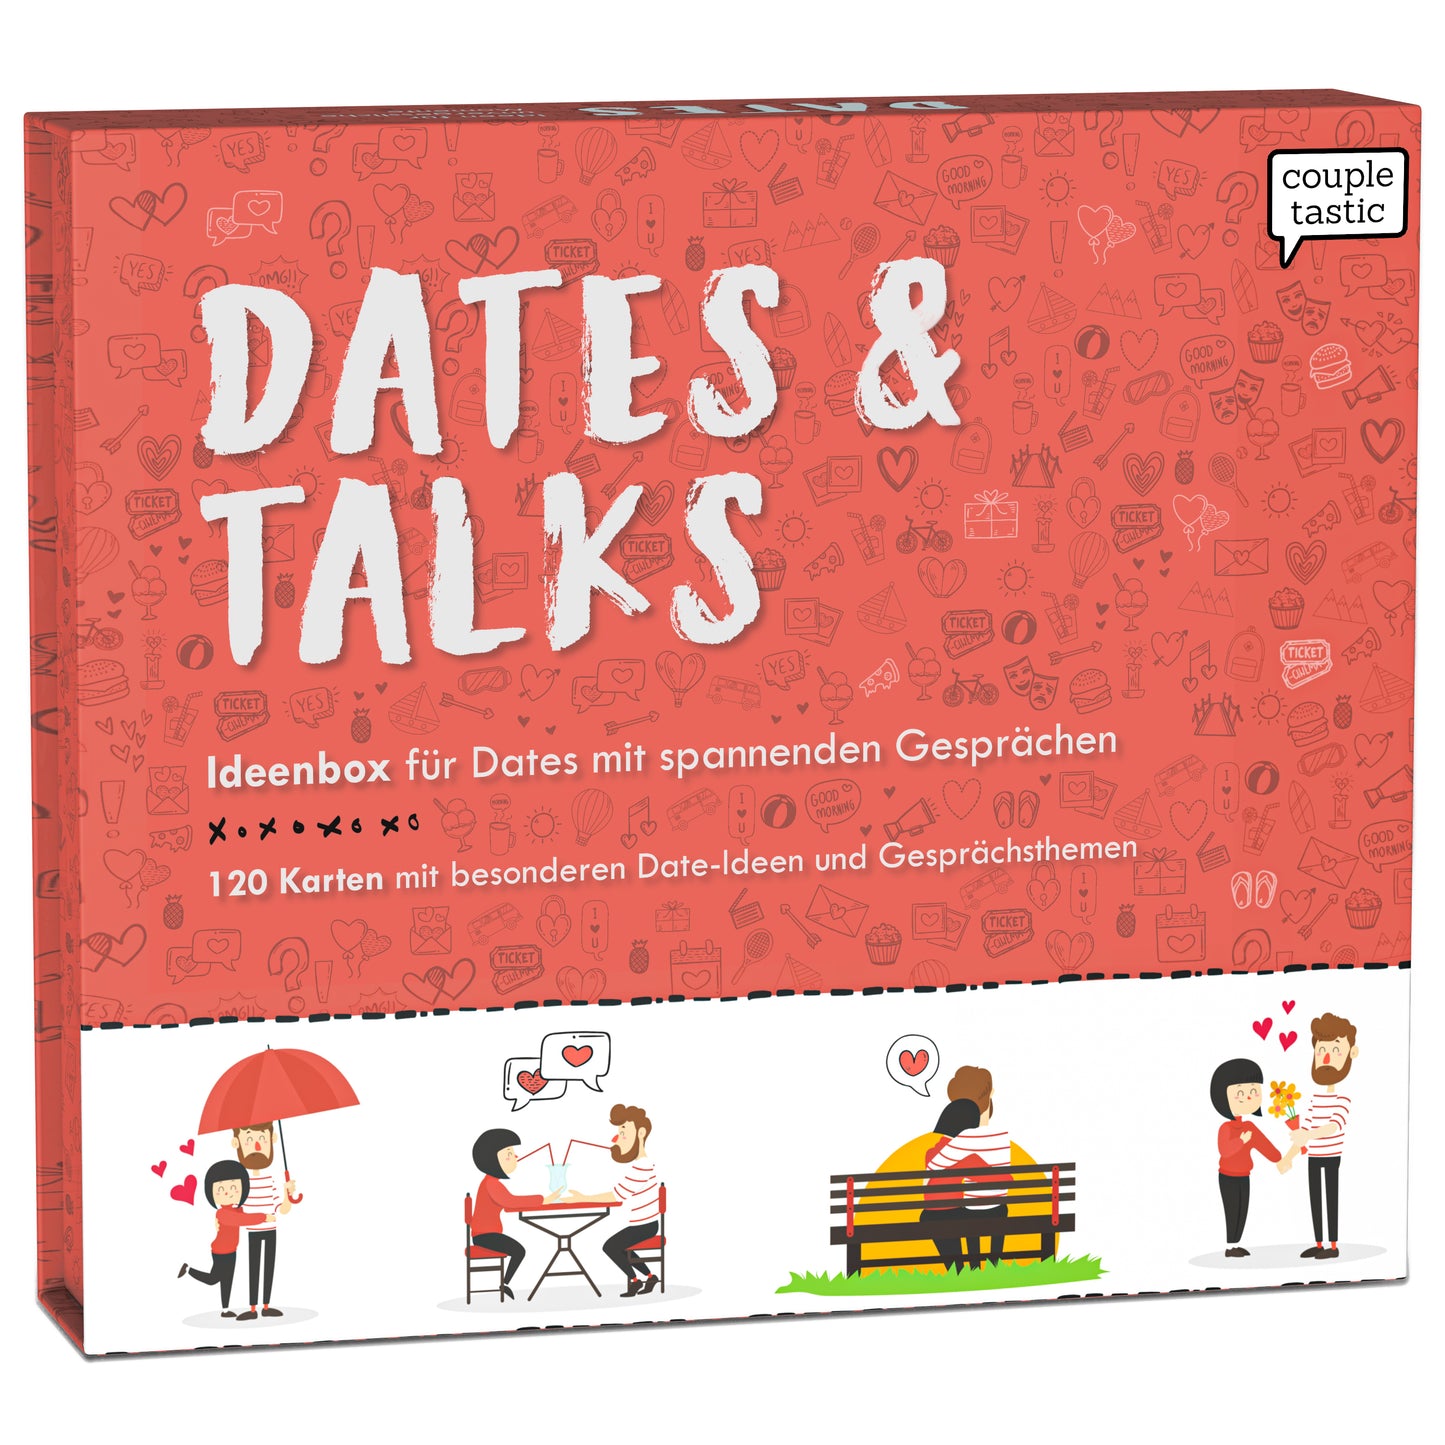 Dates & Talks